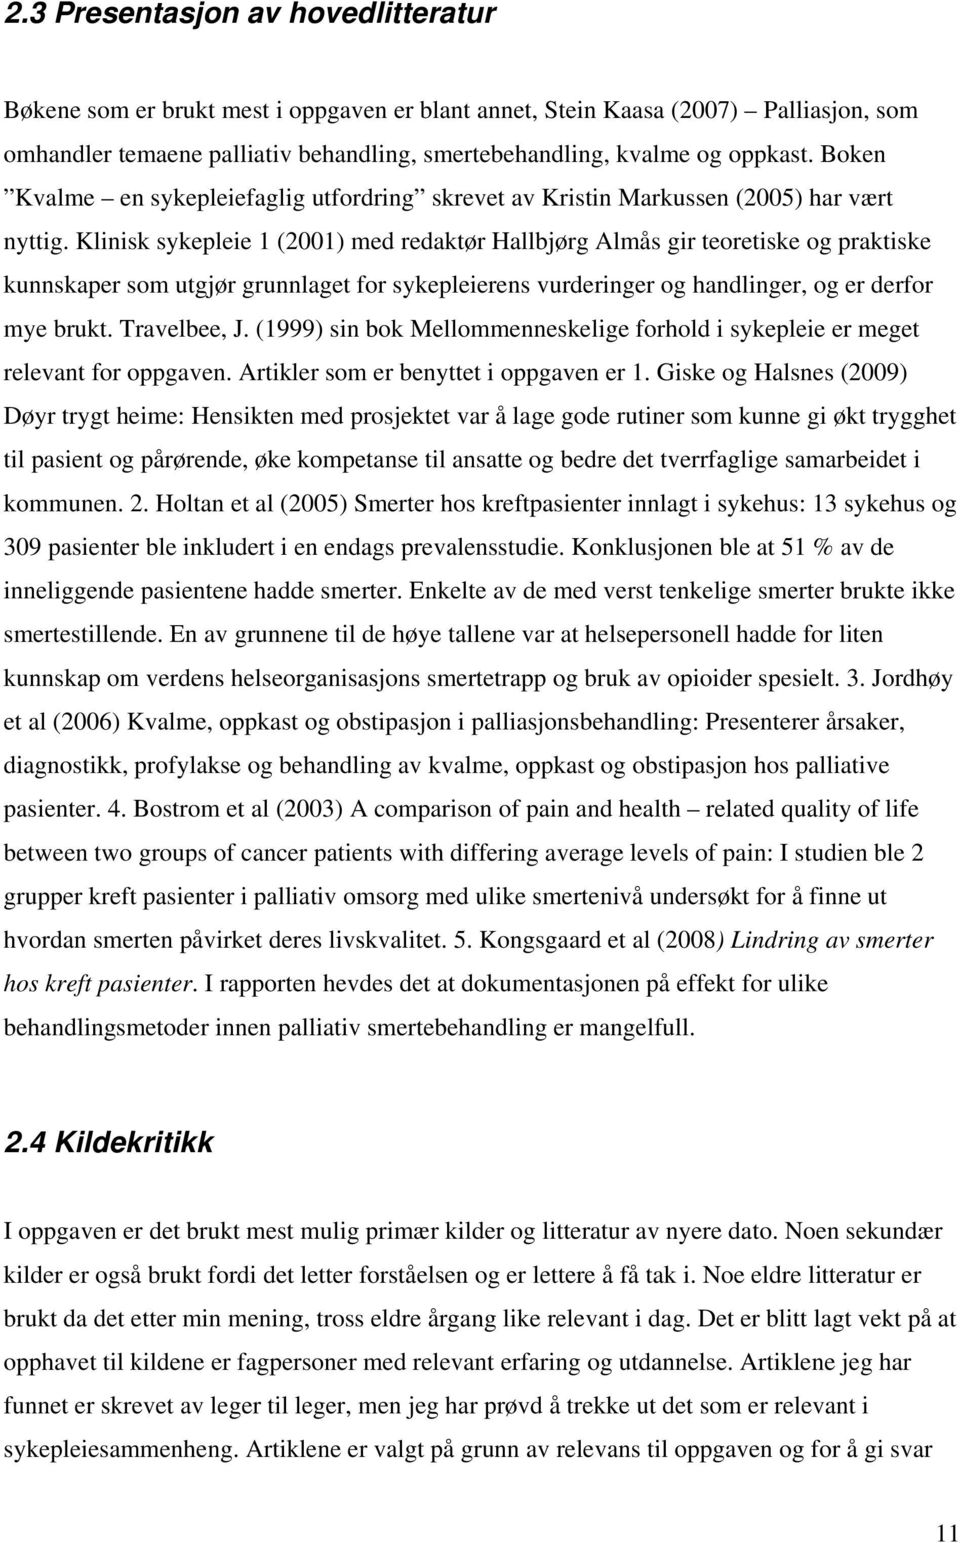 Klinisk sykepleie 1 (2001) med redaktør Hallbjørg Almås gir teoretiske og praktiske kunnskaper som utgjør grunnlaget for sykepleierens vurderinger og handlinger, og er derfor mye brukt. Travelbee, J.